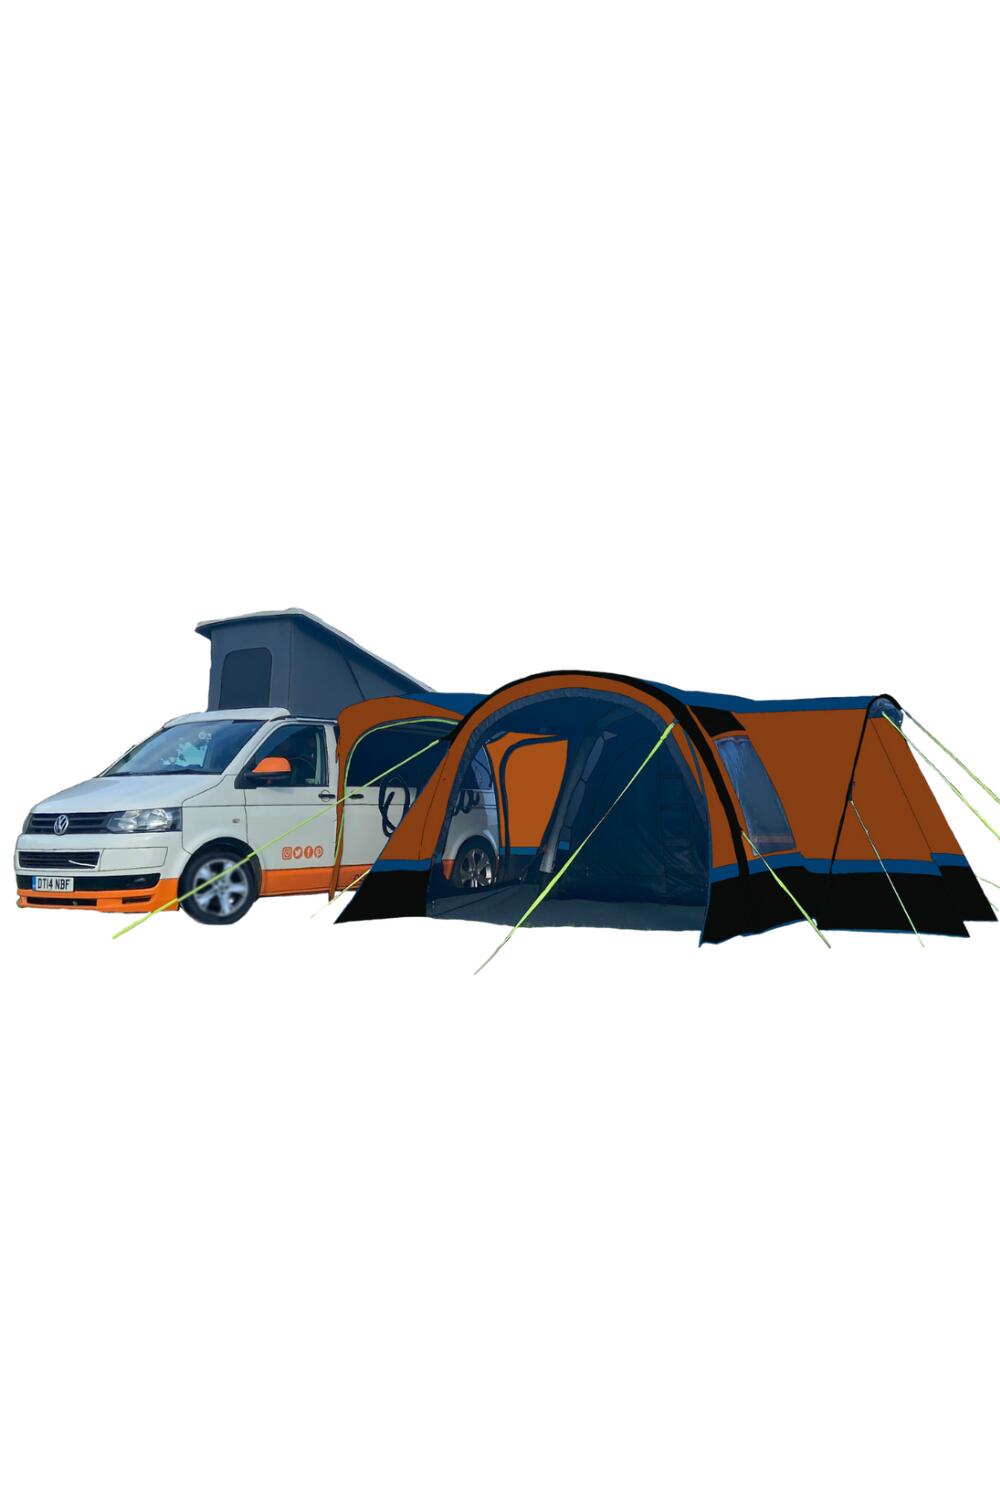 OLPRO OLPRO Cocoon Breeze v2 Campervan Awning (Orange/ Grey)v